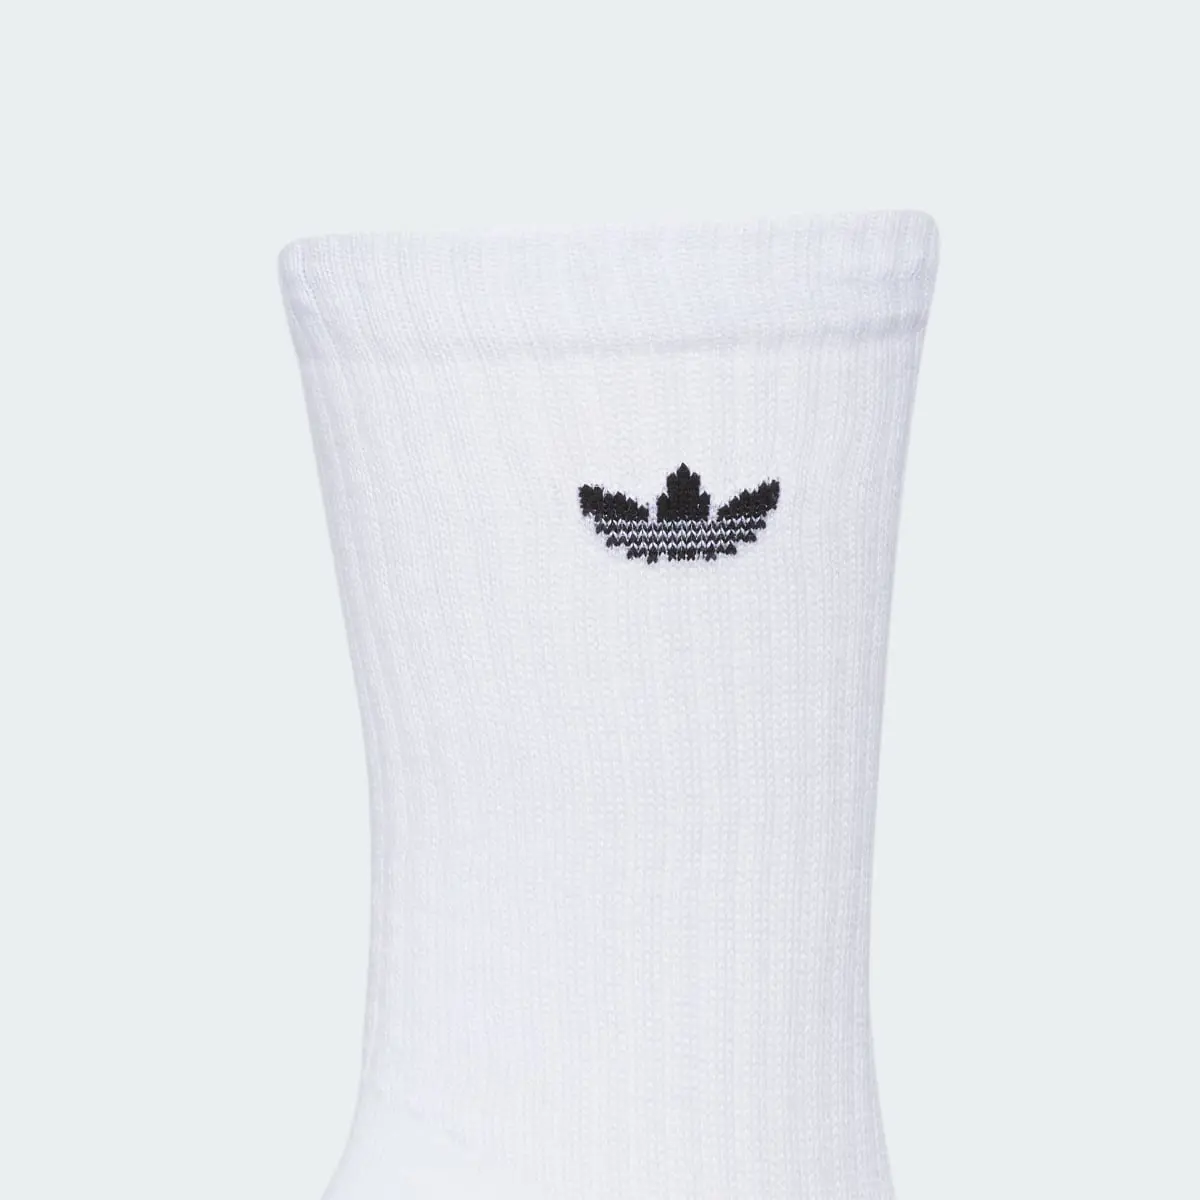 Adidas Originals Trefoil 2.0 3-Pack Crew Socks. 3